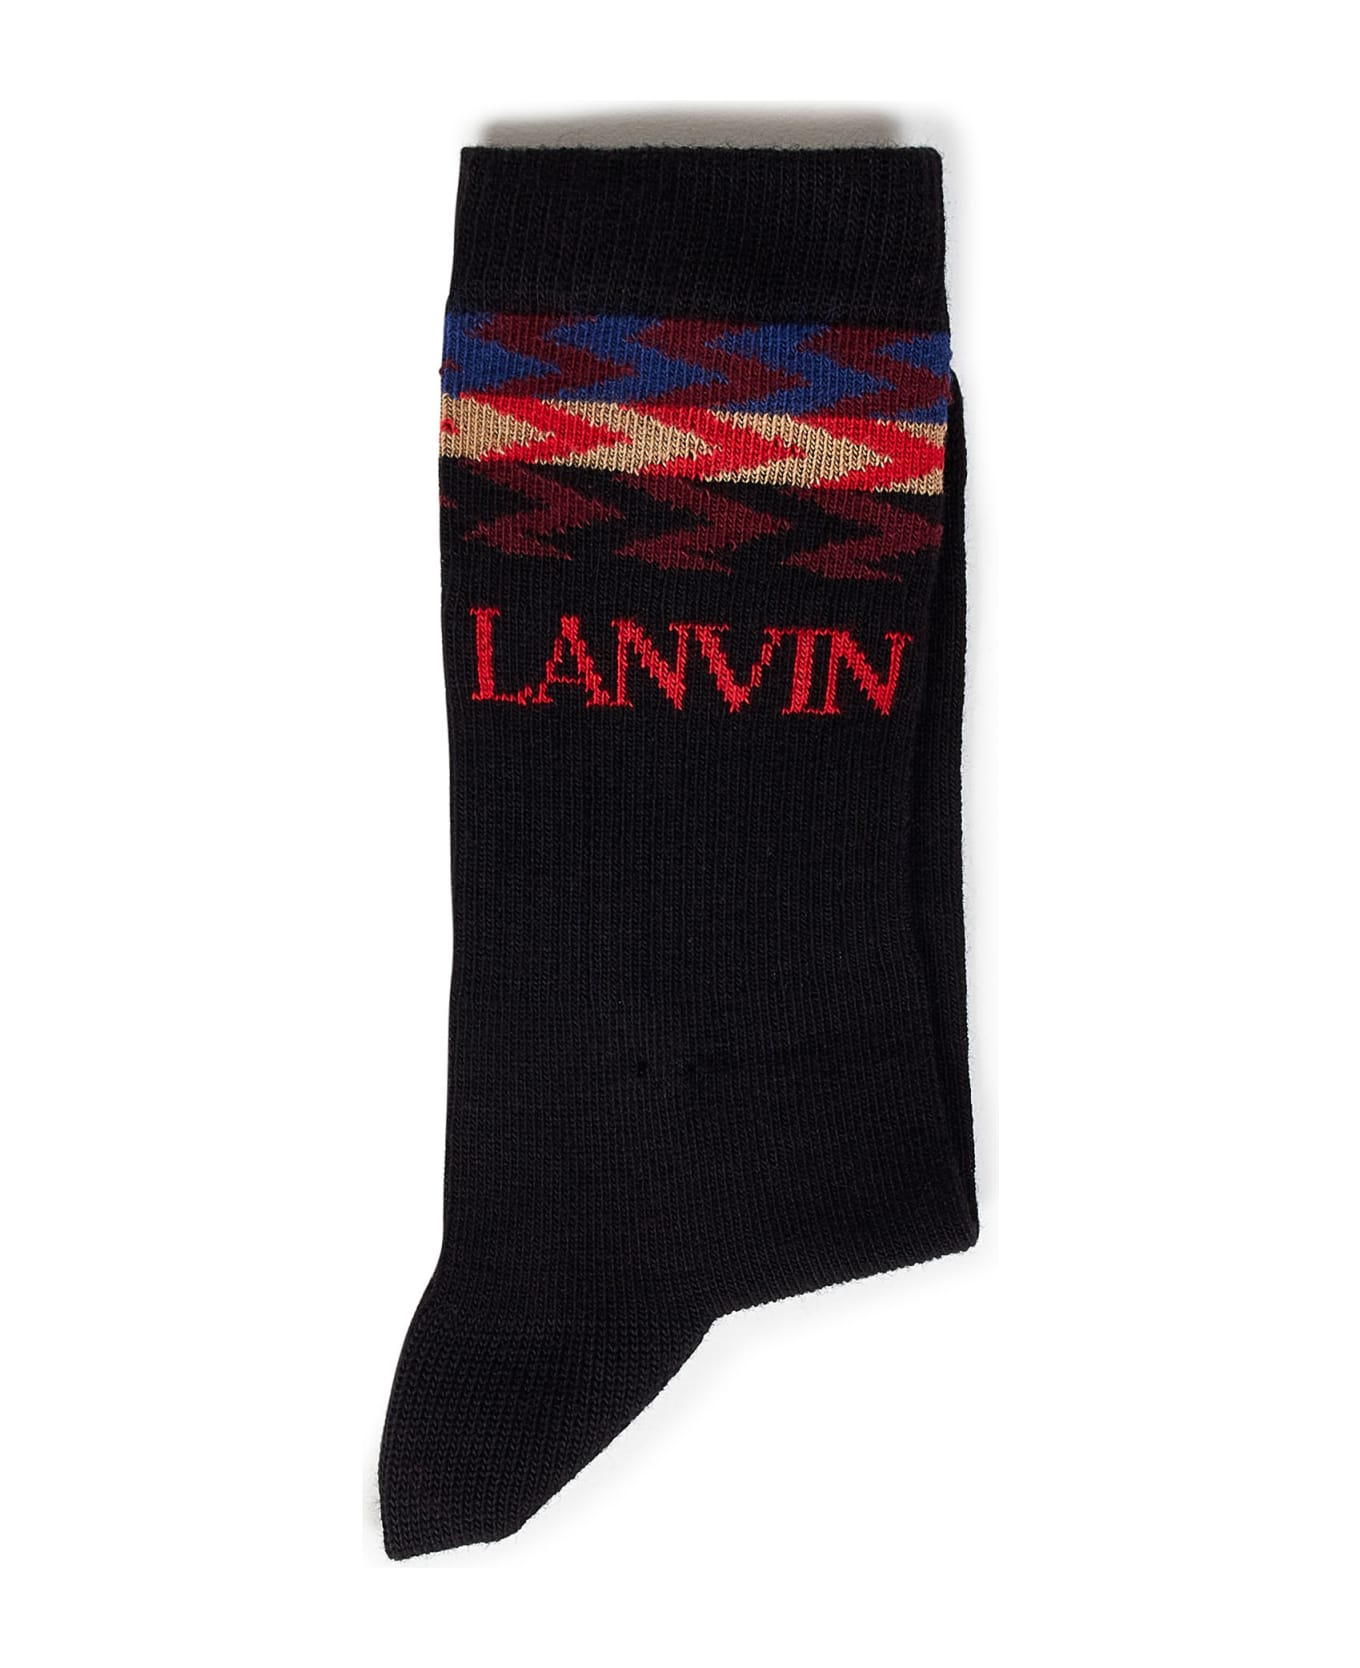 Lanvin Kids Socks - Black